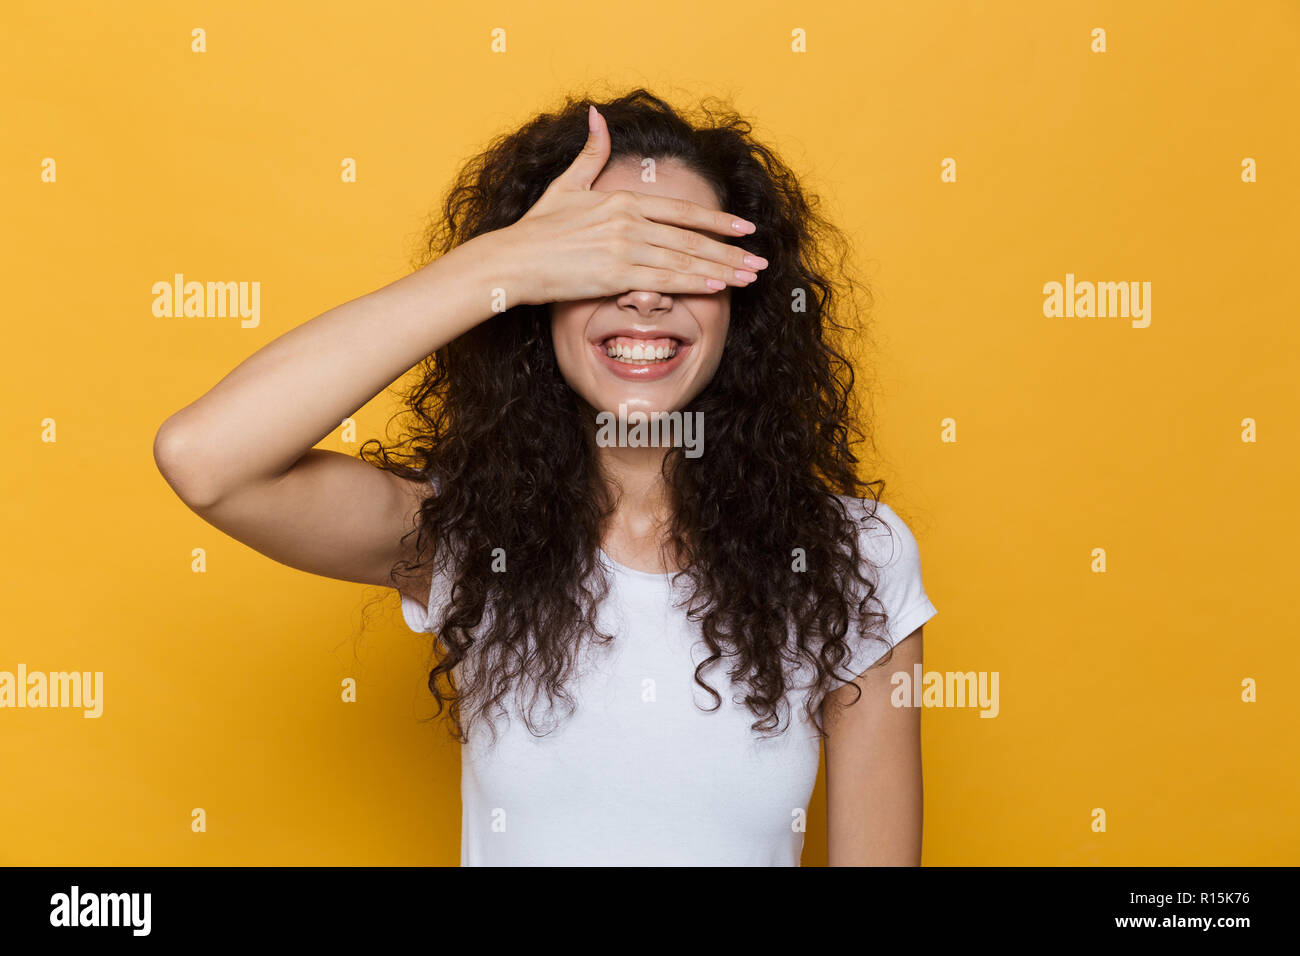 Image de femme brune 20s avec les cheveux bouclés de sourire et les yeux avec revêtement isolé sur fond jaune palm Banque D'Images